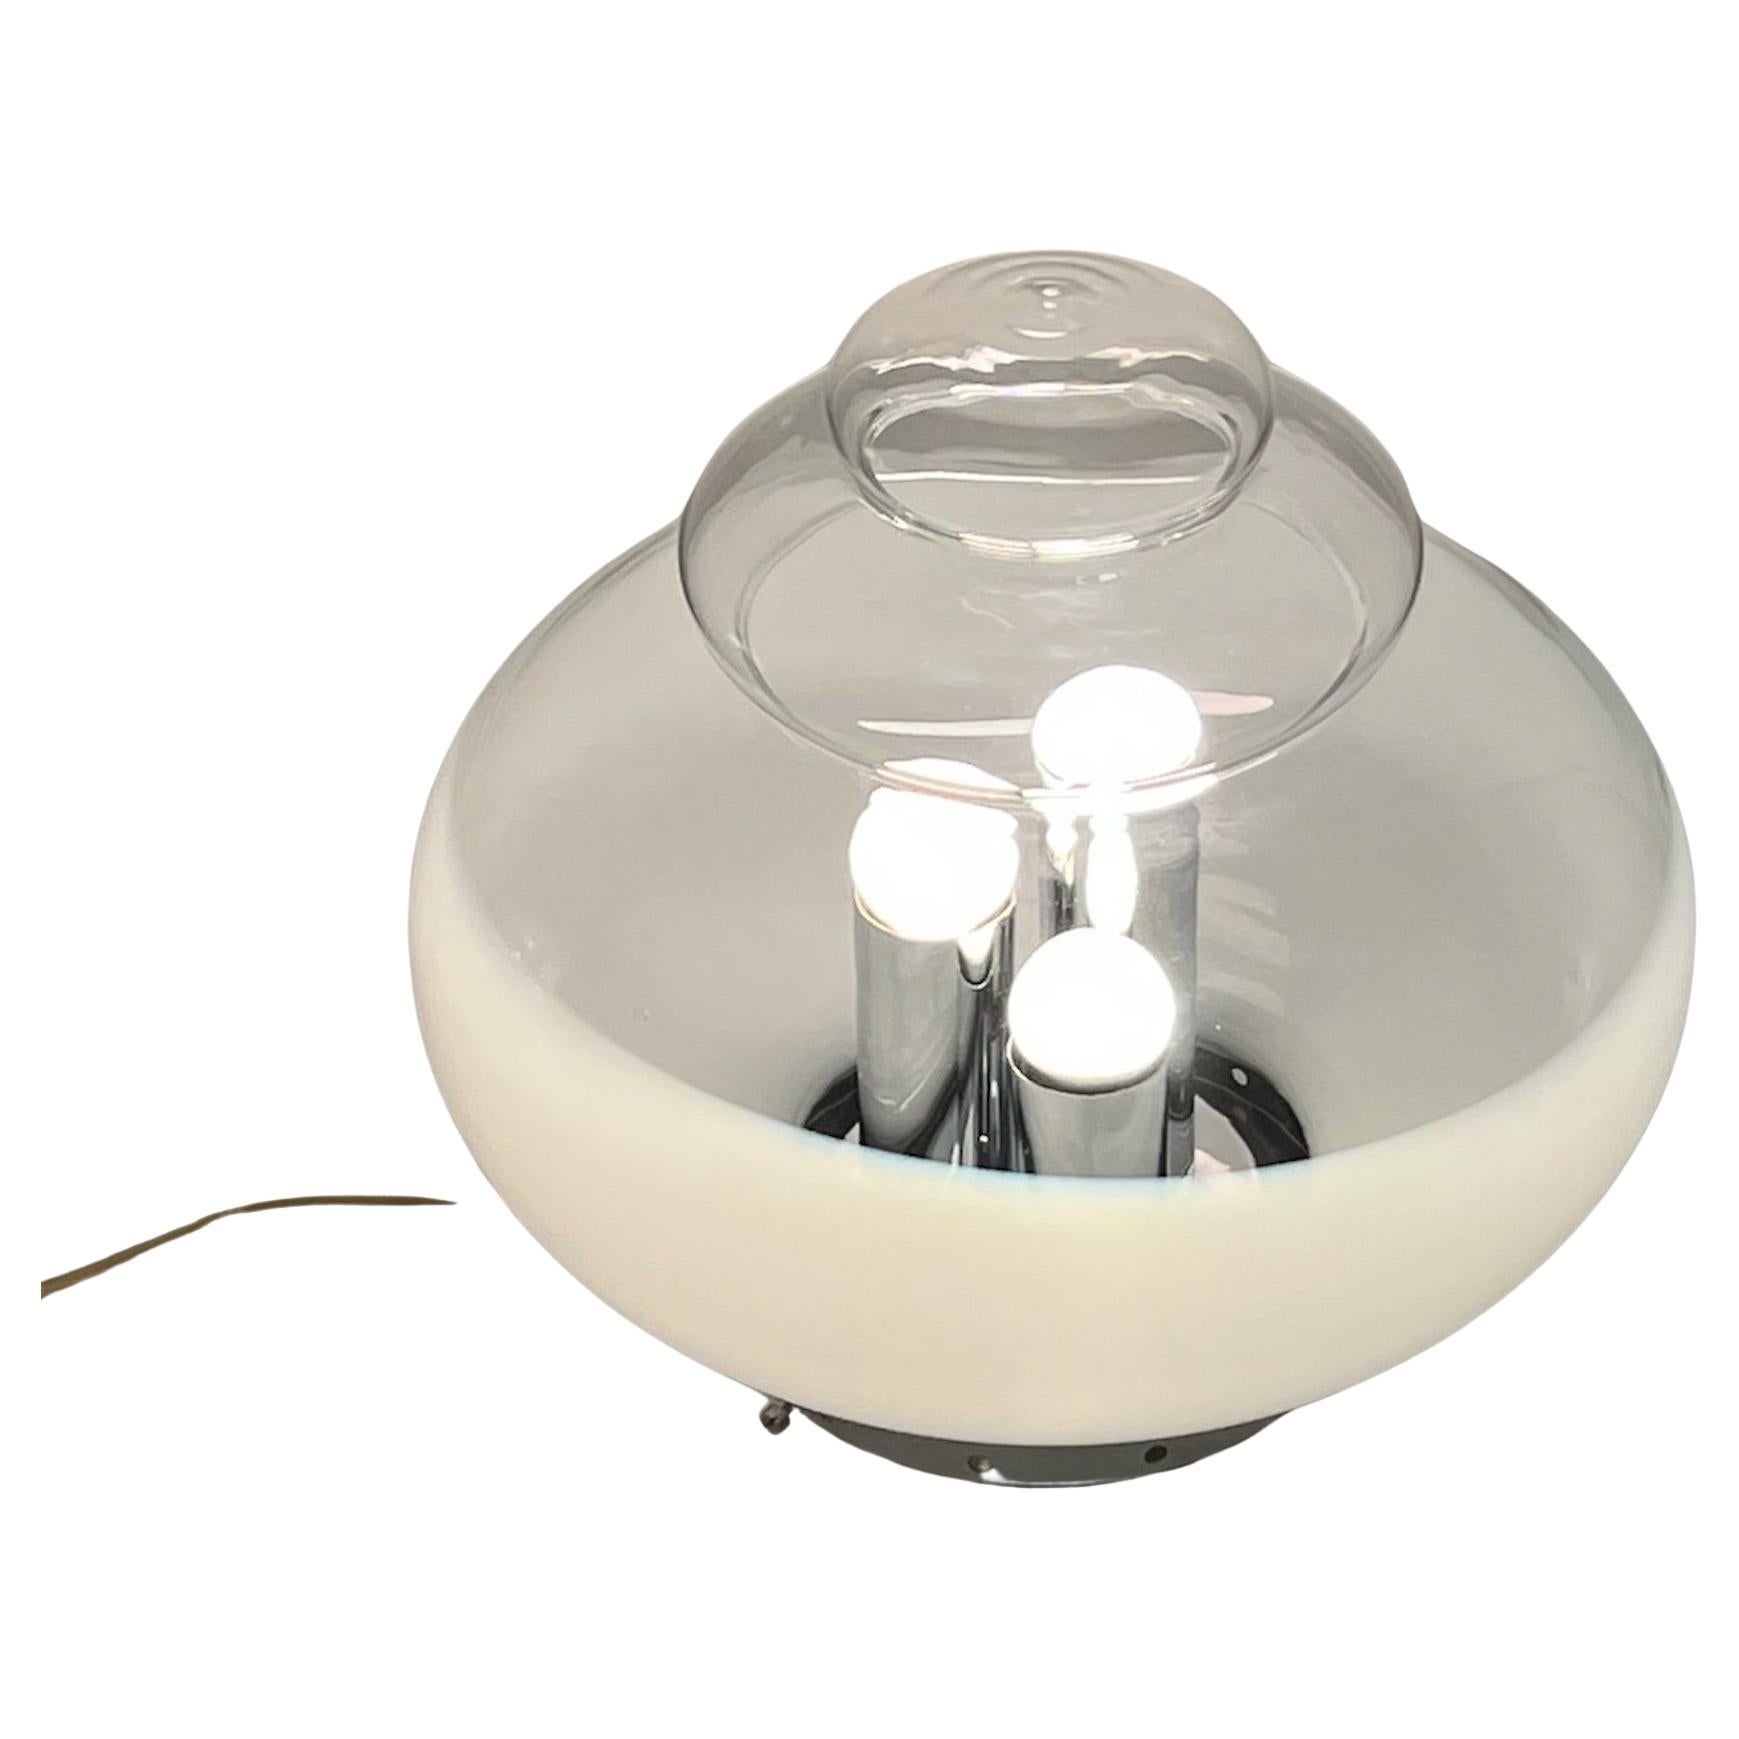 Étonnante lampe de table soucoupe volante "OVNI" de l'A Space, Italie, années 1960